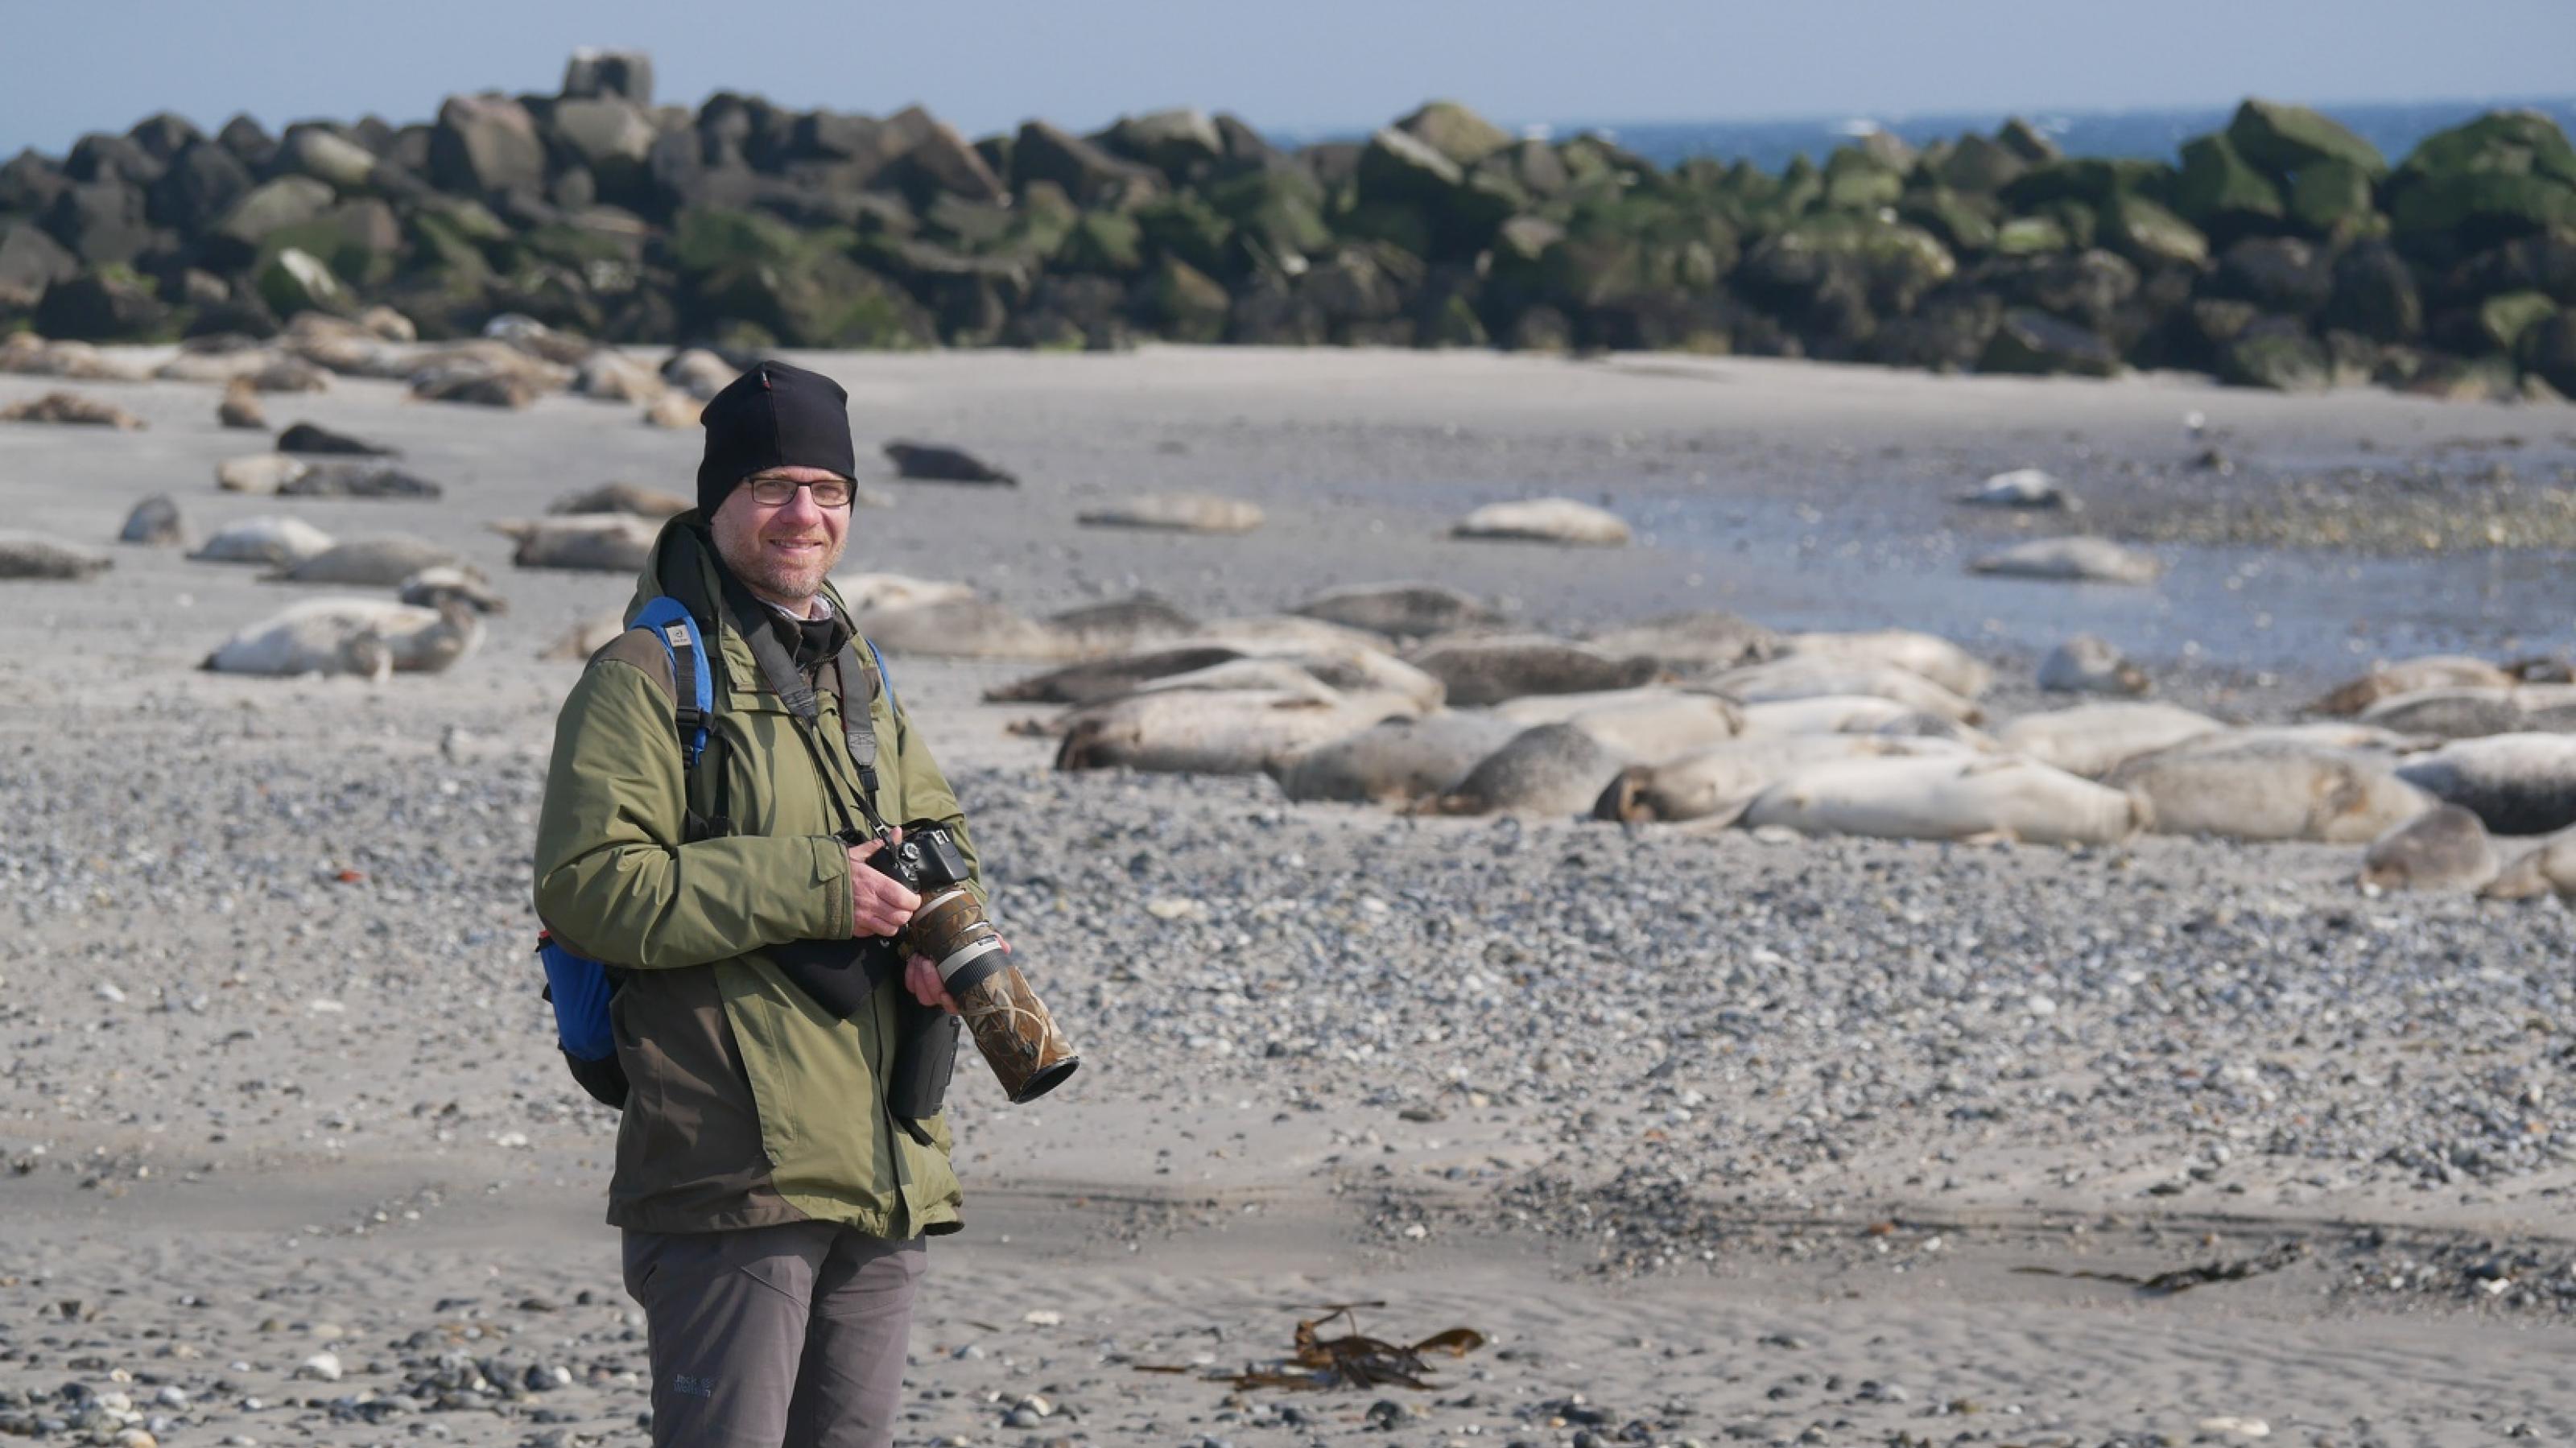 Thomas Gerl steht mit seiner Kamera in der Hand an einem Strand.